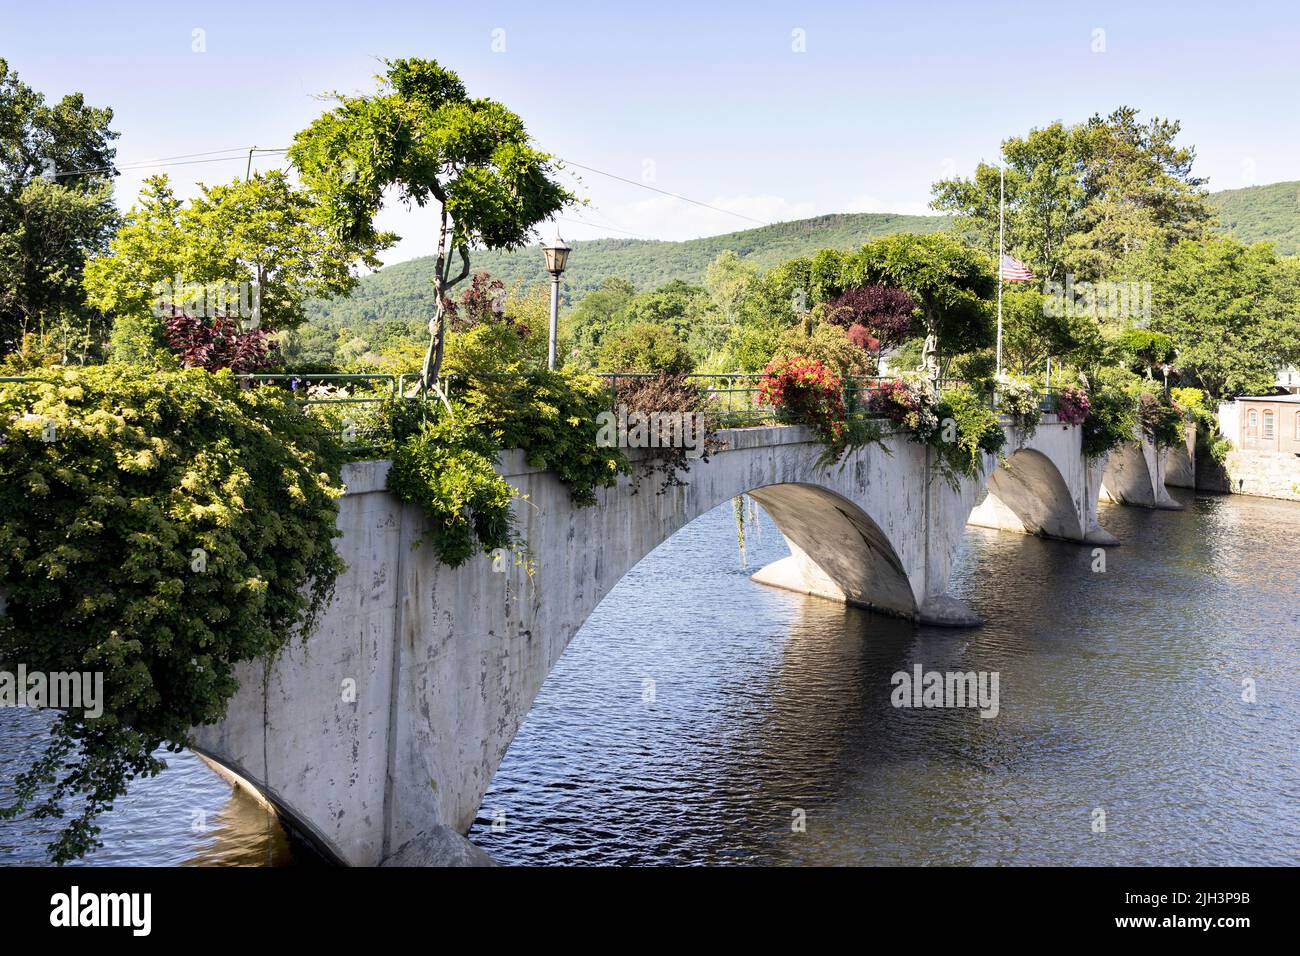 The Bridge of Flowers in Shelburne Falls, Massachusetts, USA. Stock Photo